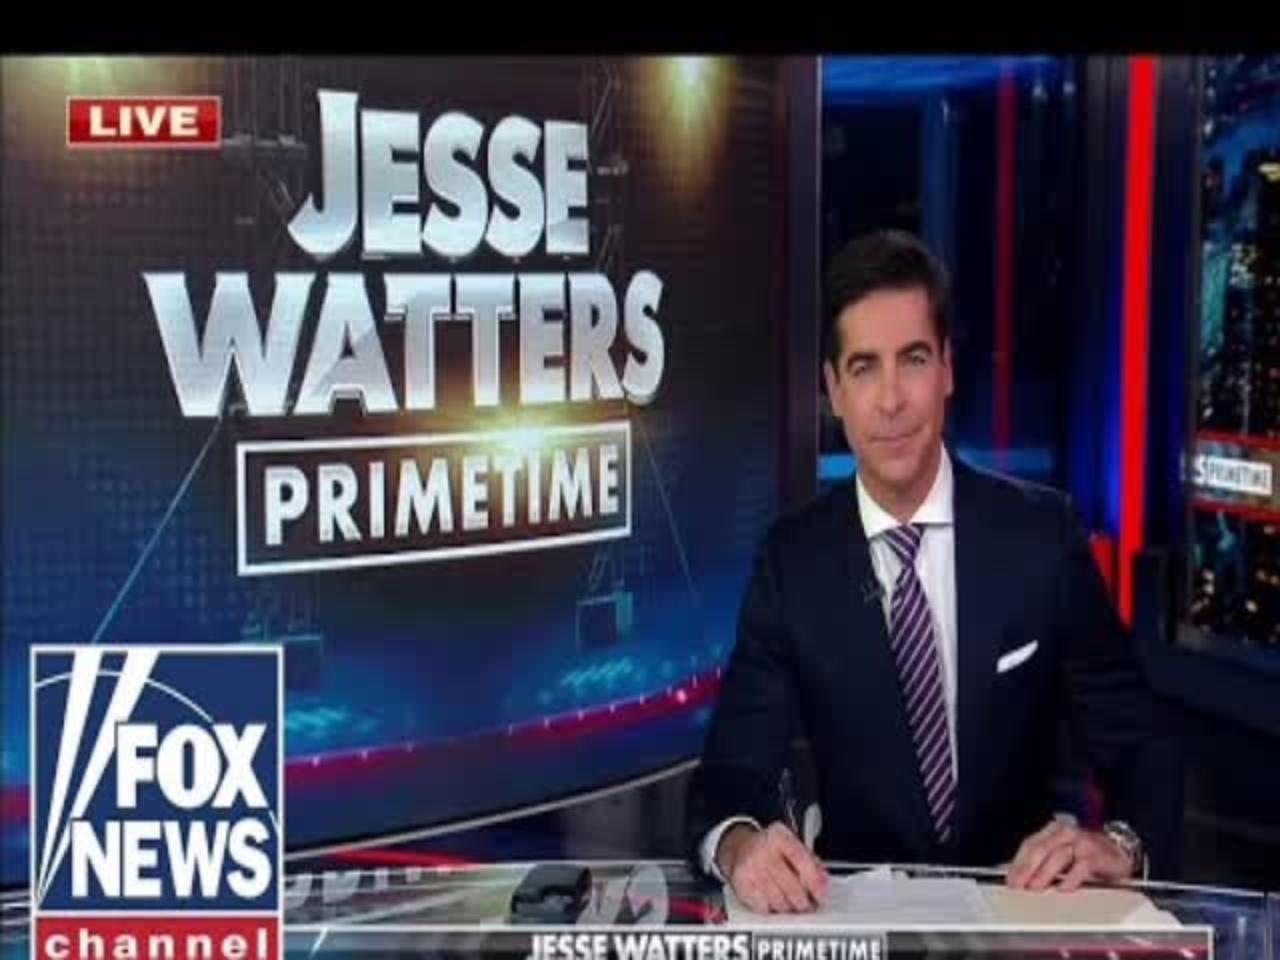 Jesse Watters Primetime 11/04/22 FULL SHOW | FOX BREAKING NEWS November 4, 2022